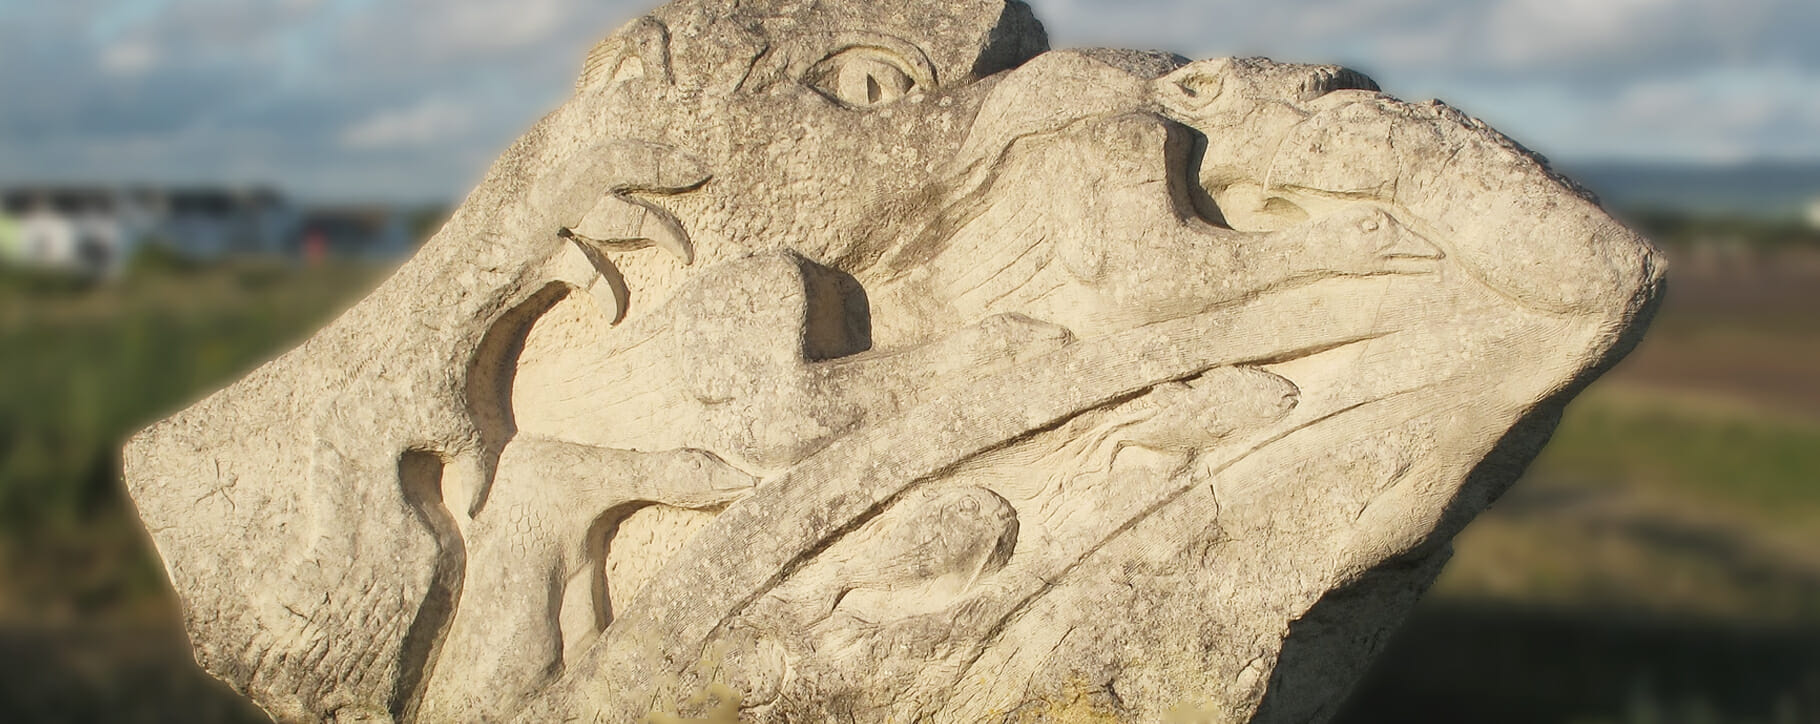 Stone Sculpture Outdoors Cumbria